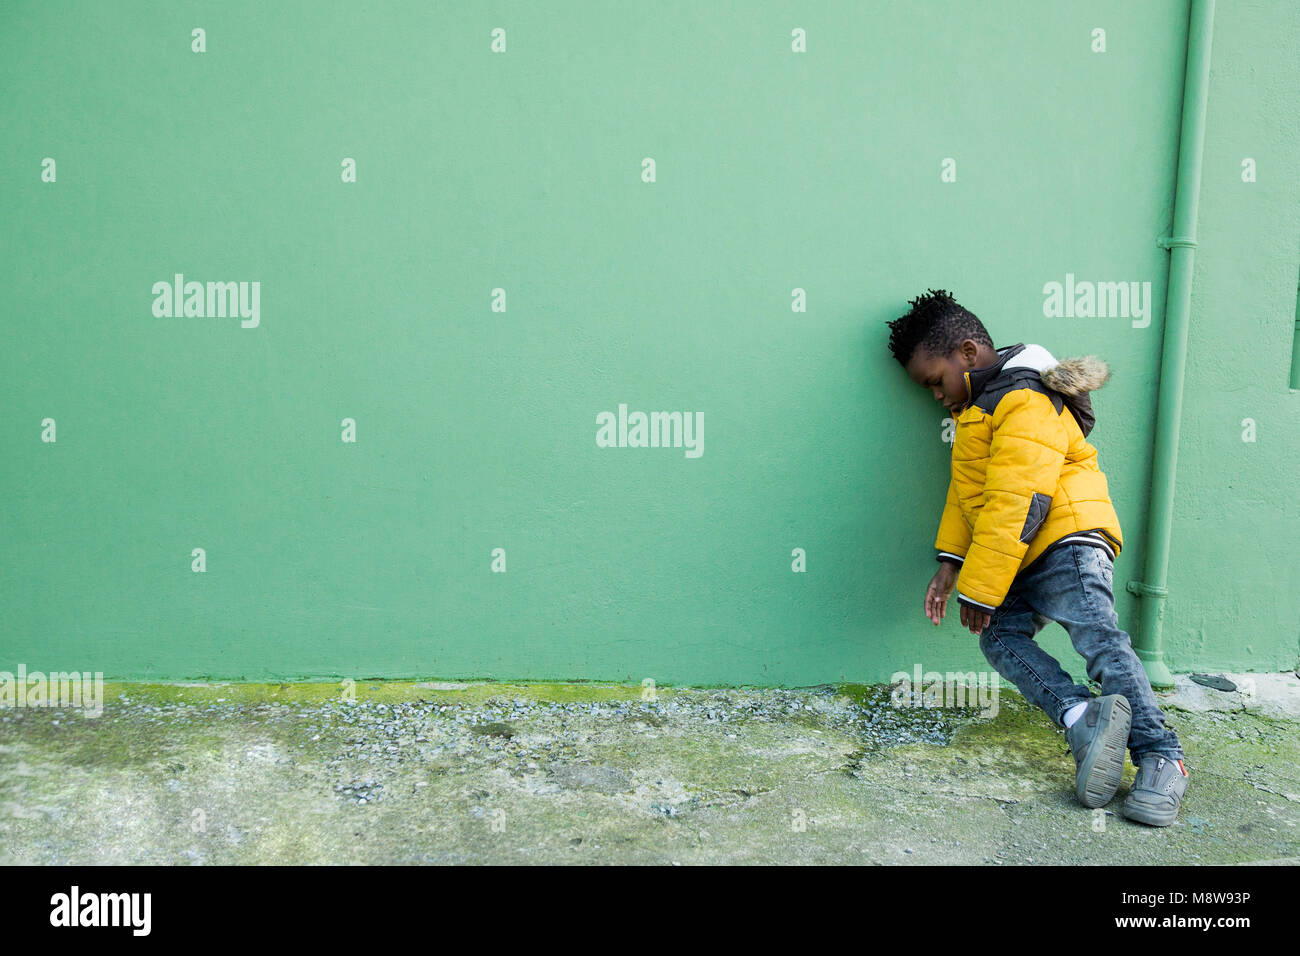 Müde und verärgert kleiner Junge im gelben Mantel lehnte sich auf einer grünen Wand auf der Straße Stockfoto